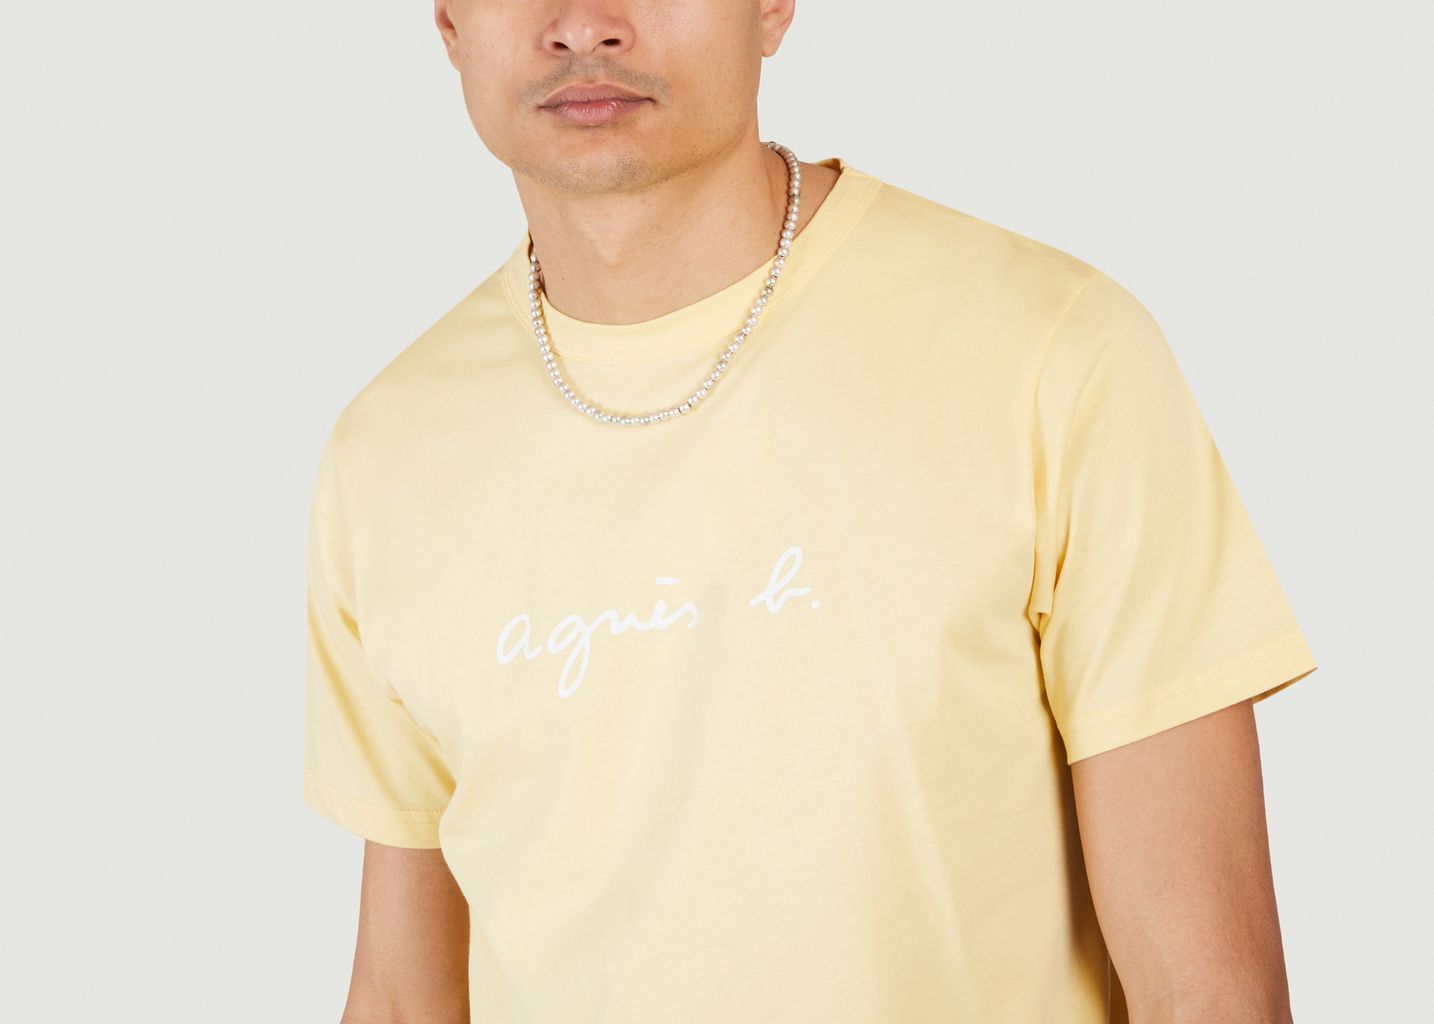 Brando T-shirt - agnès b.